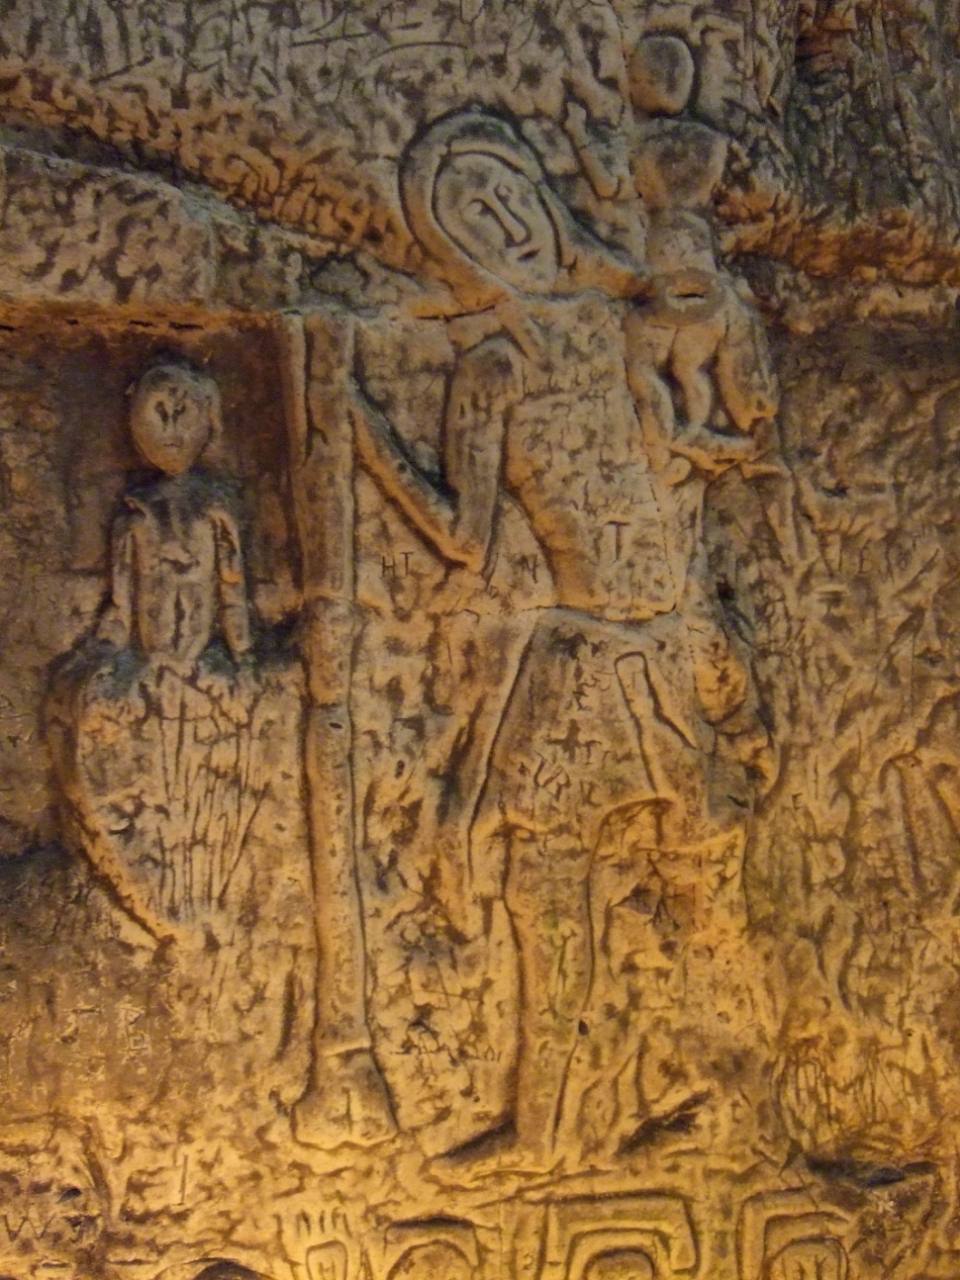 Titokzatos szimbólumok és faragványok az ember alkotta Royston Cave 4-ben